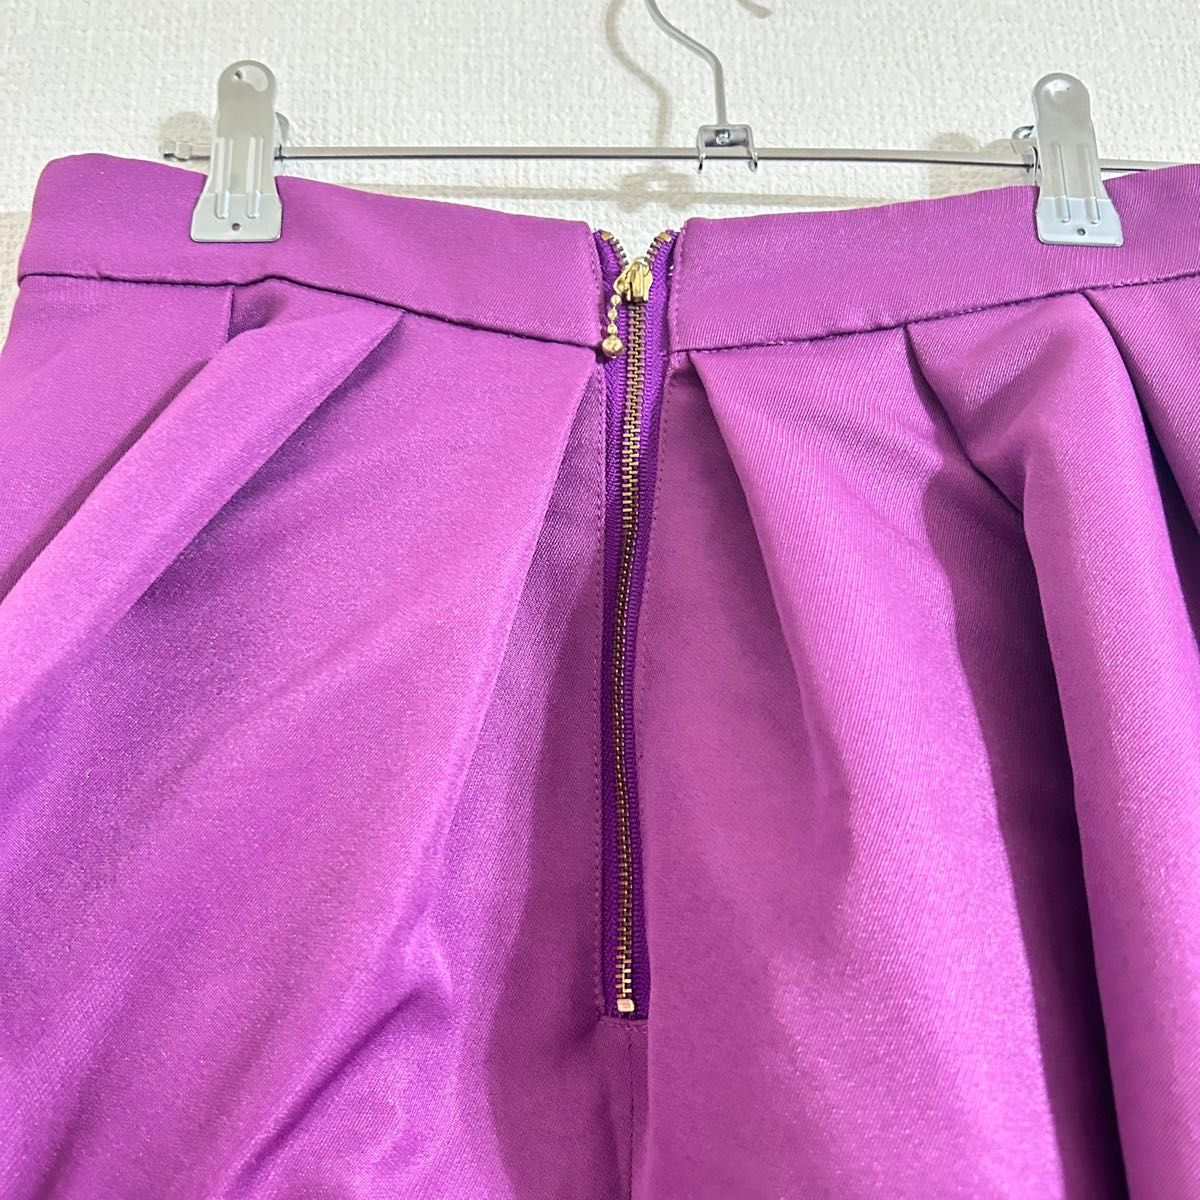 31 Sons de mode トランテアンソンドゥモード　カラーフレアスカート　パープル　紫 ロングスカート　S